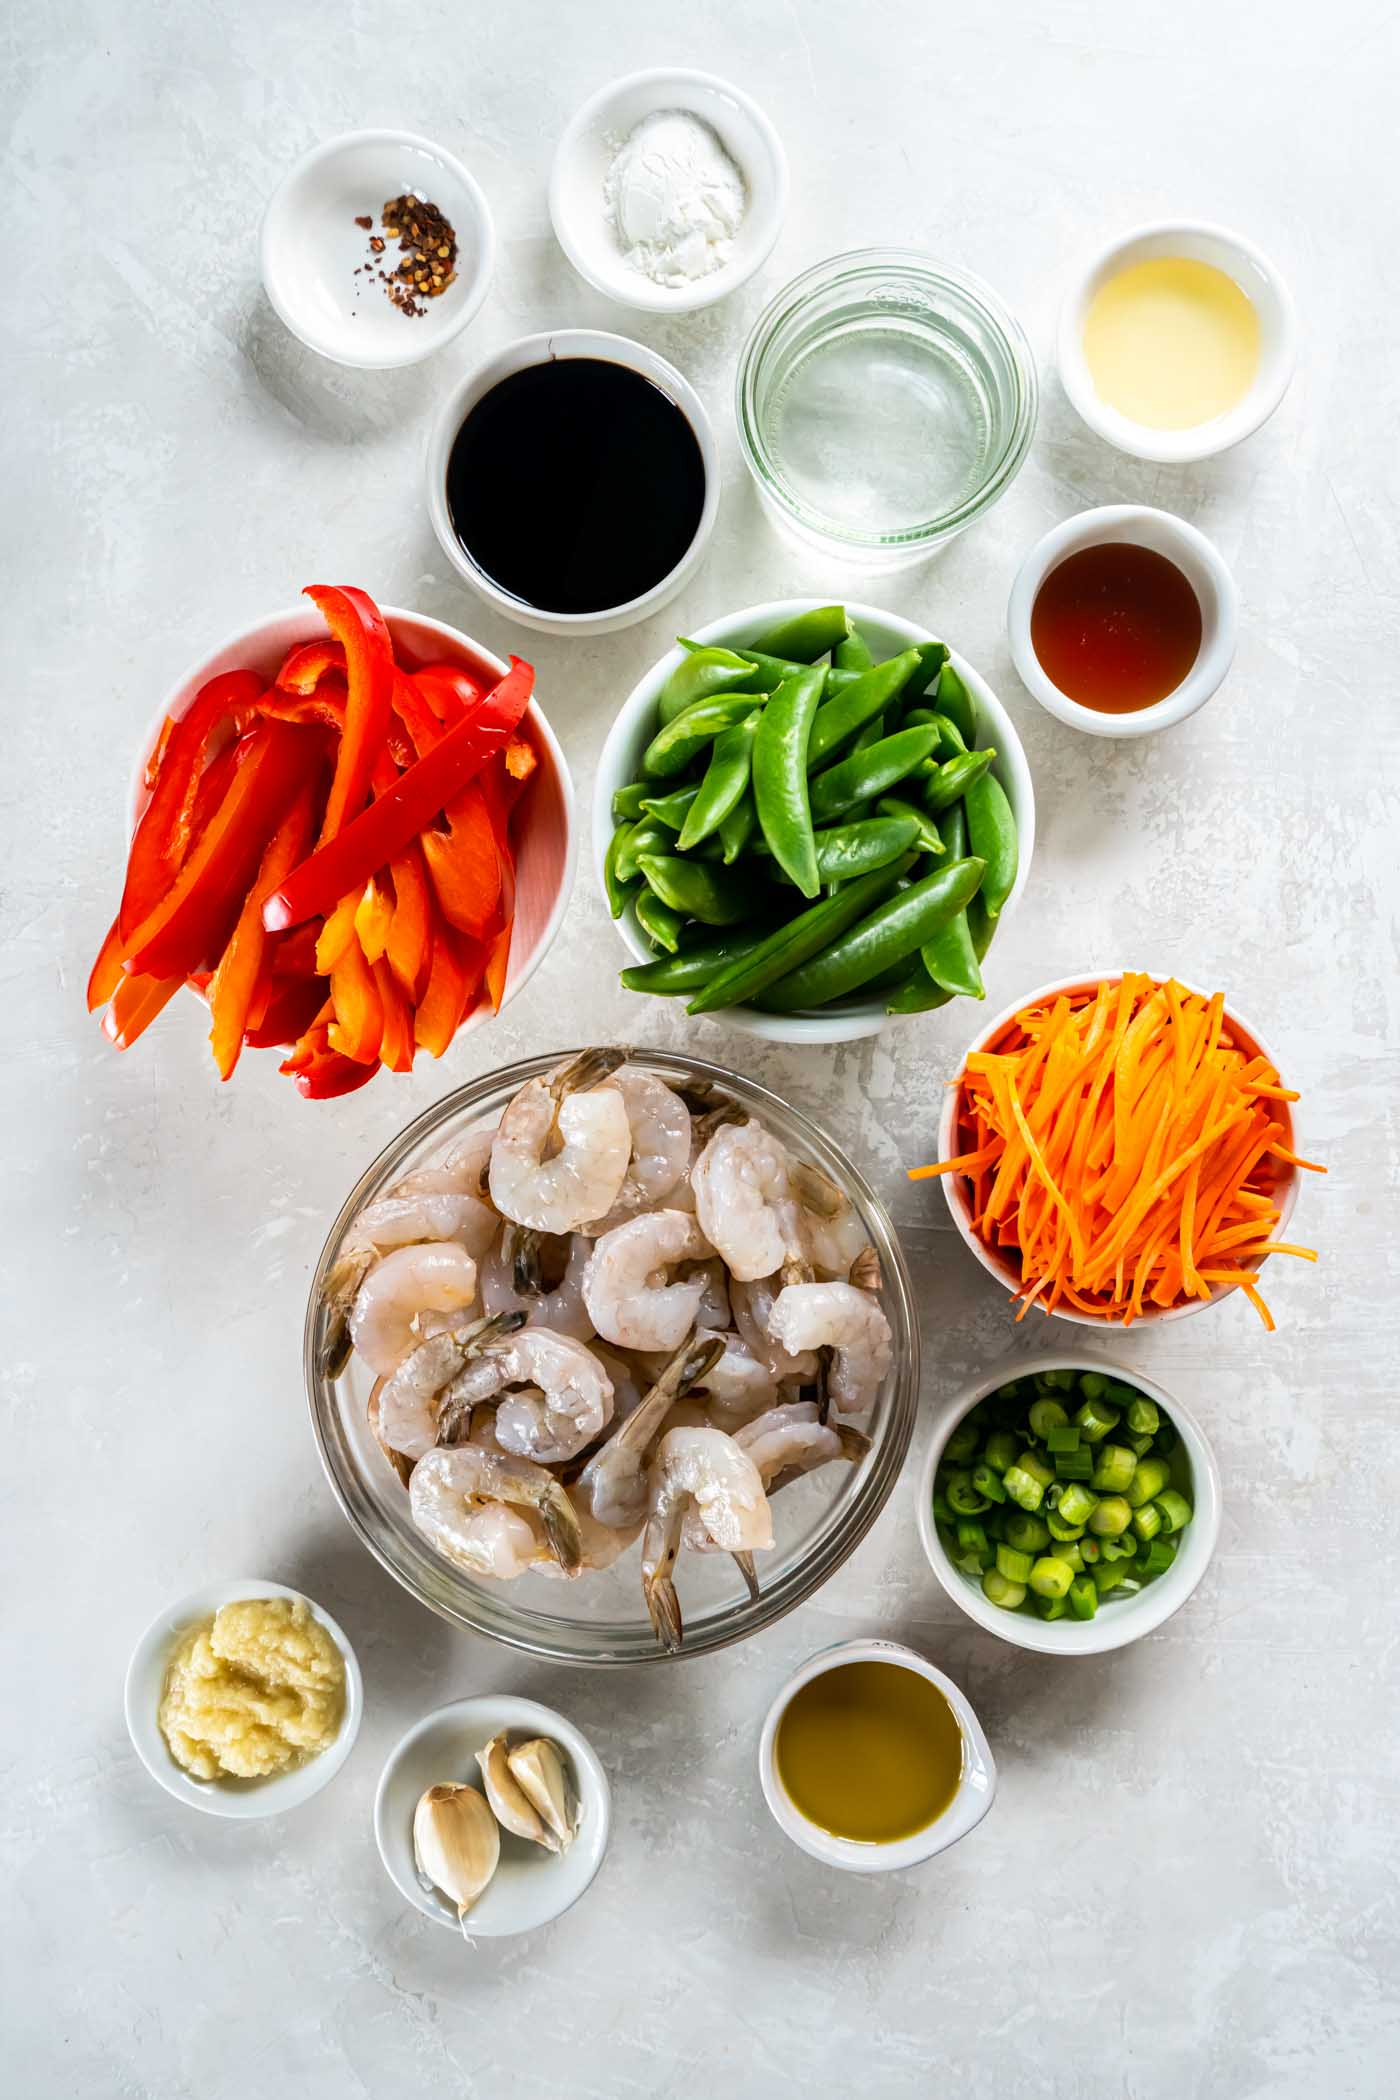 Ingredients for shrimp stir fry recipe.